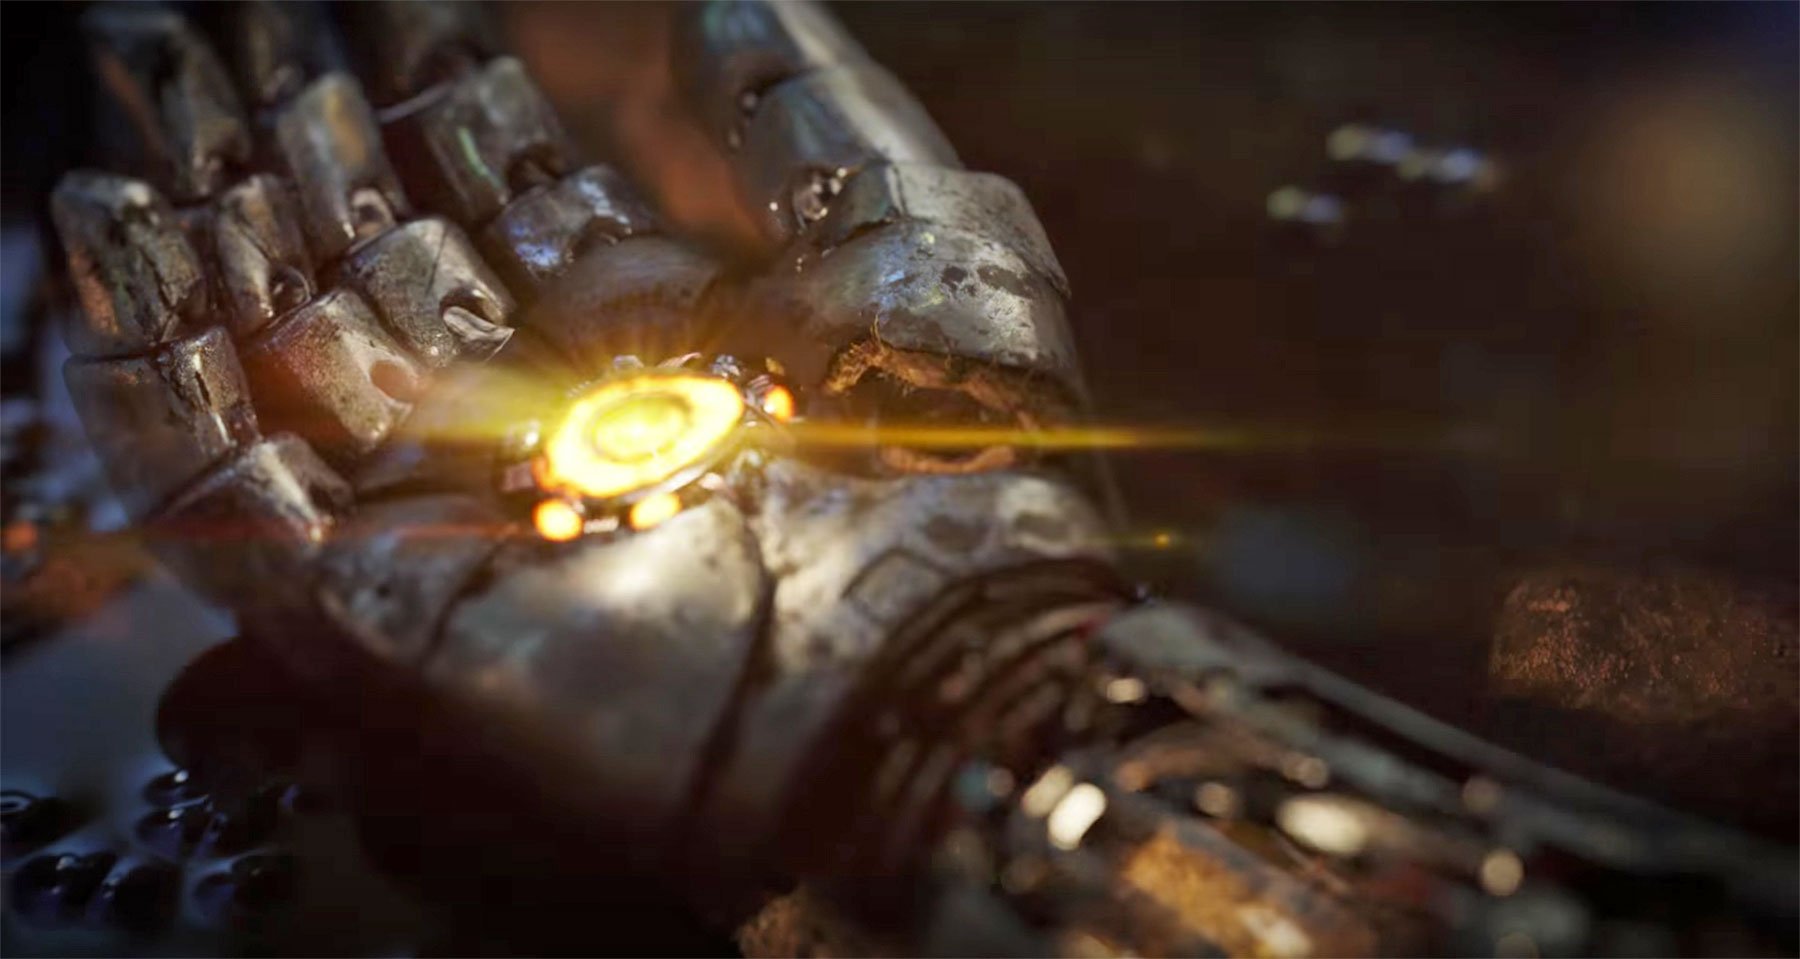 Η Square Enix σε συνεργασία με τη Marvel αναπτύσσει ένα παιχνίδι με θέμα τους Avengers